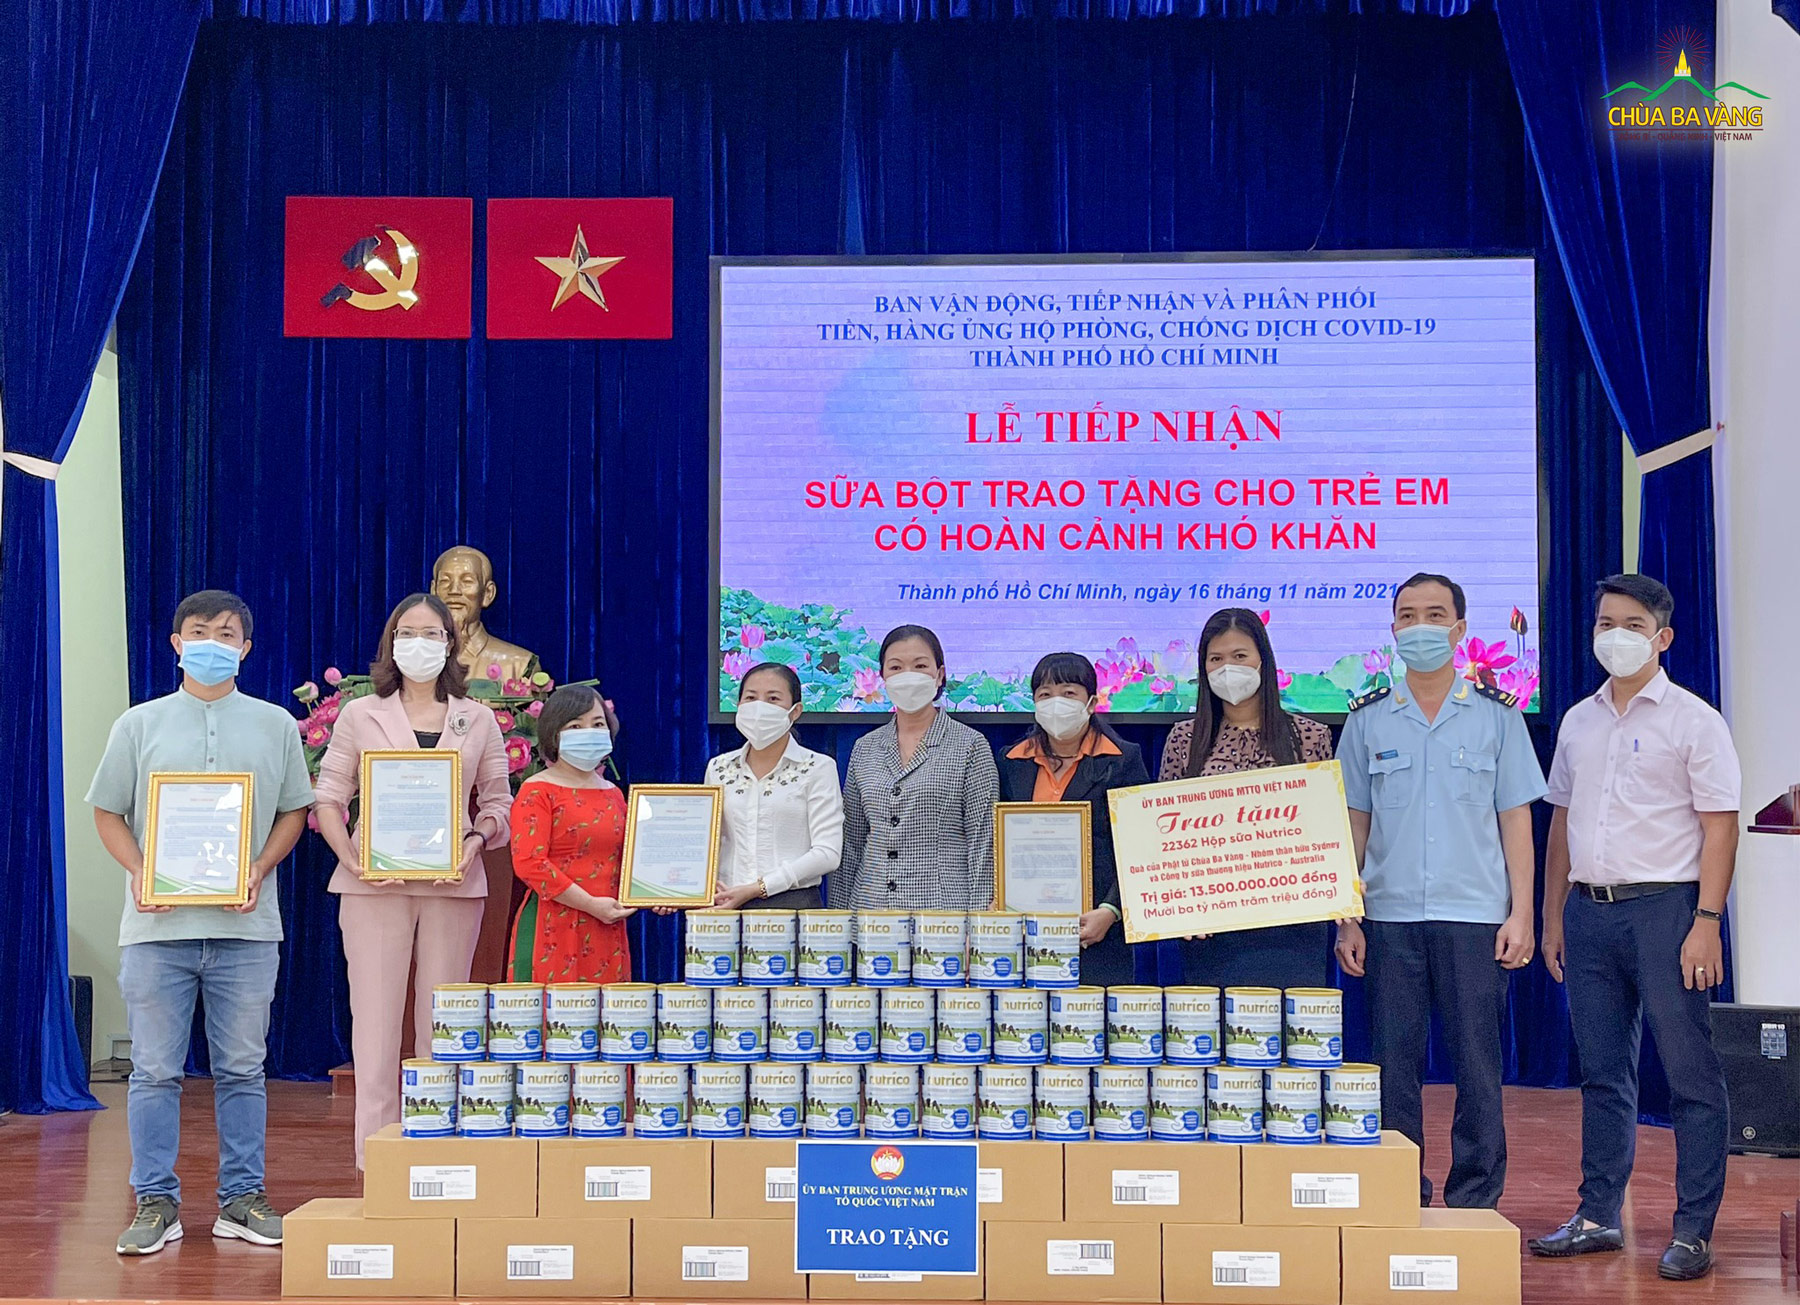 Đại diện các Phật tử chùa Ba Vàng đón nhận thư cảm ơn của Ủy ban MTTQVN TP. Hồ Chí Minh trao tặng chùa Ba Vàng trong việc ủng hộ 22.362 hộp sữa bột (trị giá 13 tỷ 500 triệu đồng) cho trẻ em có hoàn cảnh khó khăn bị ảnh hưởng bởi dịch CV19